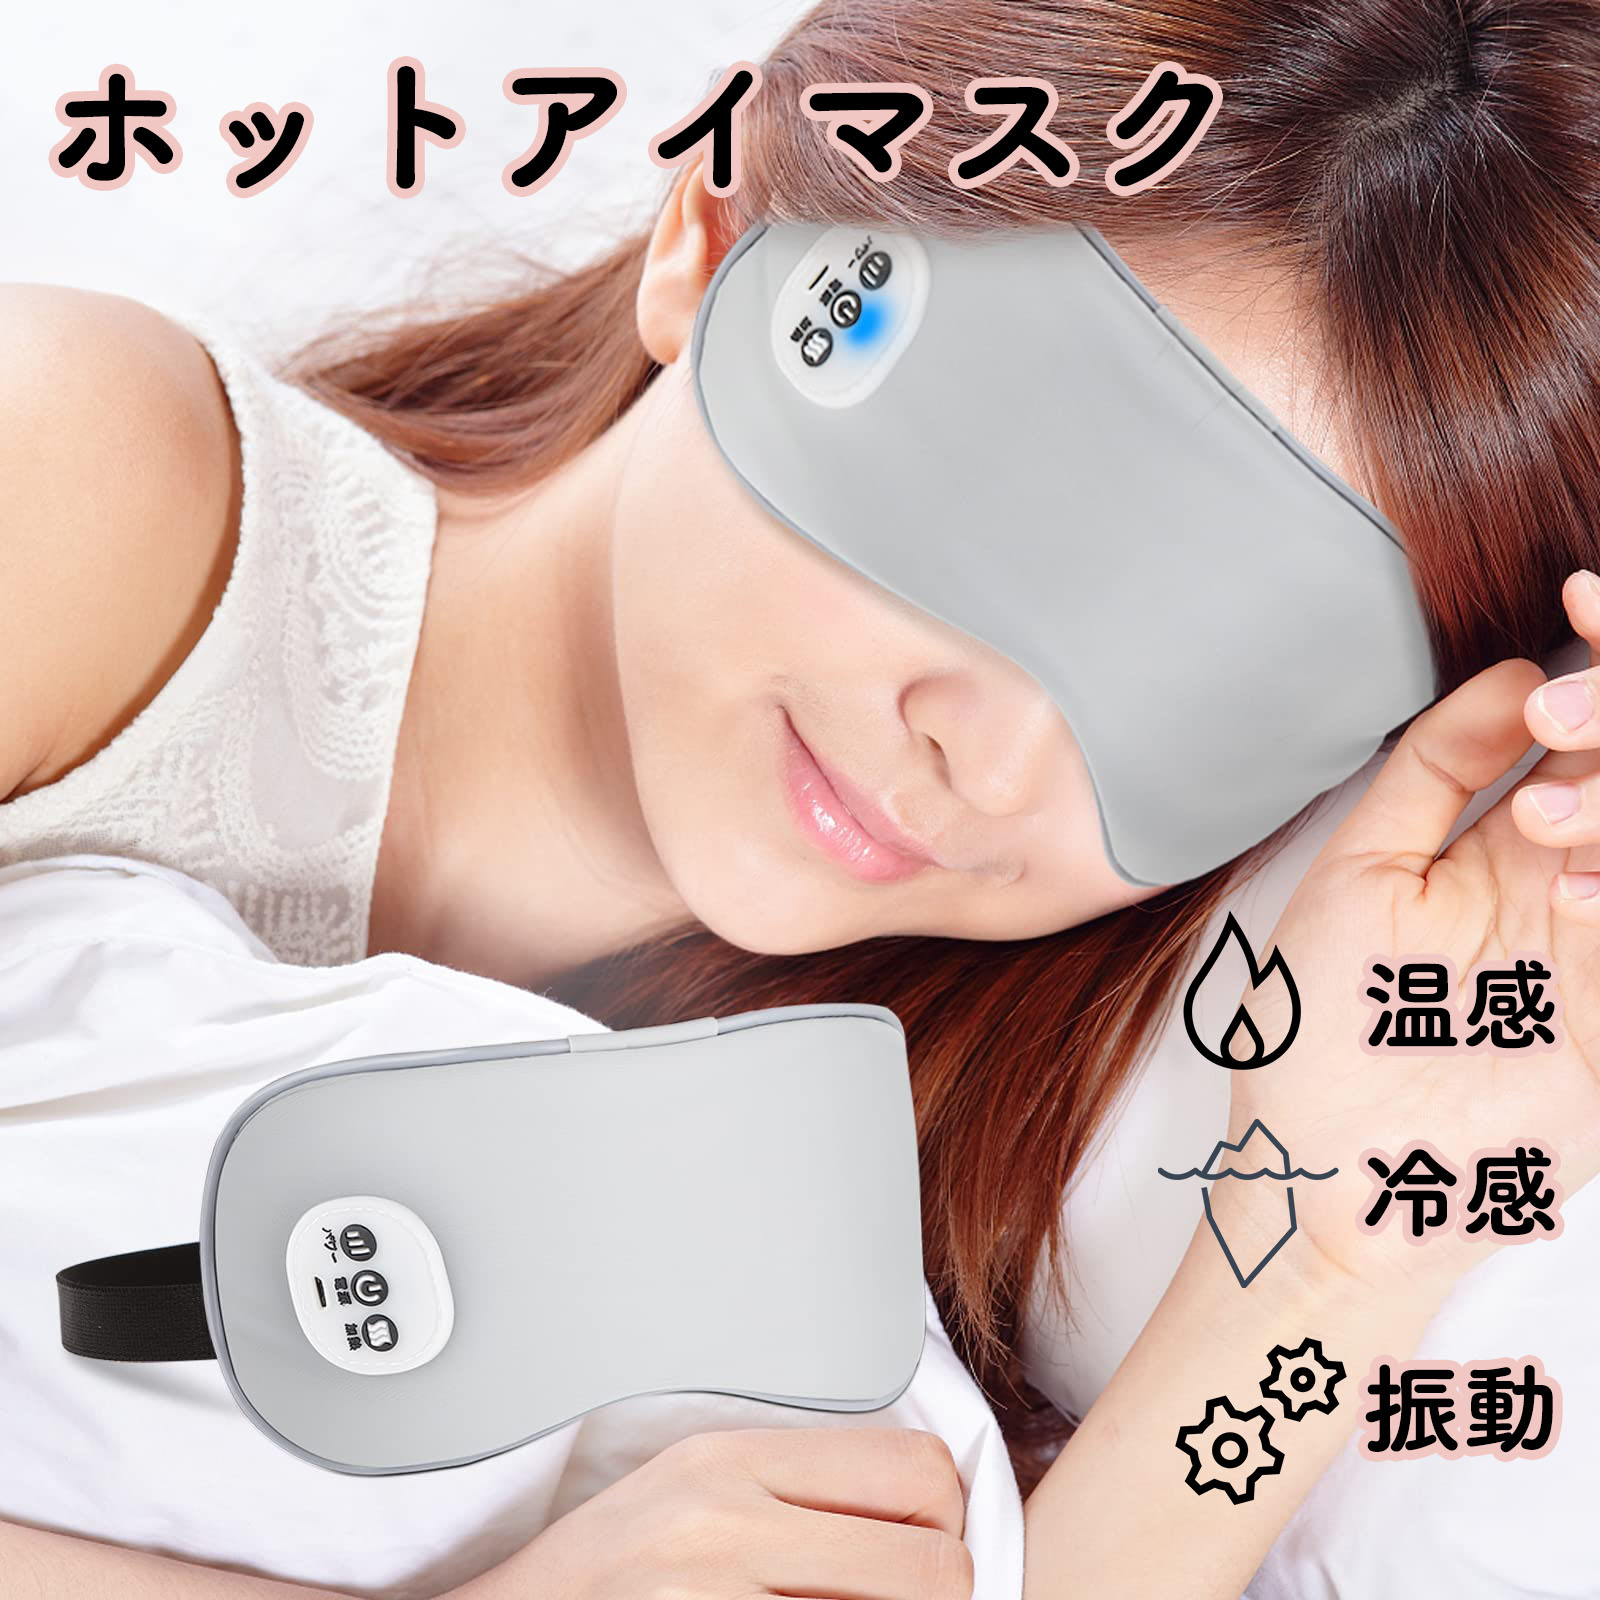 ホットアイマスク USB充電式 コードレス 繰り返し使える アイウォーマー 3段階加熱 振動モード ジェル式アイマスク付き 自動オフタイマー サイズ調整可能 さらさら 睡眠用 安眠 遮光 手軽 圧迫…